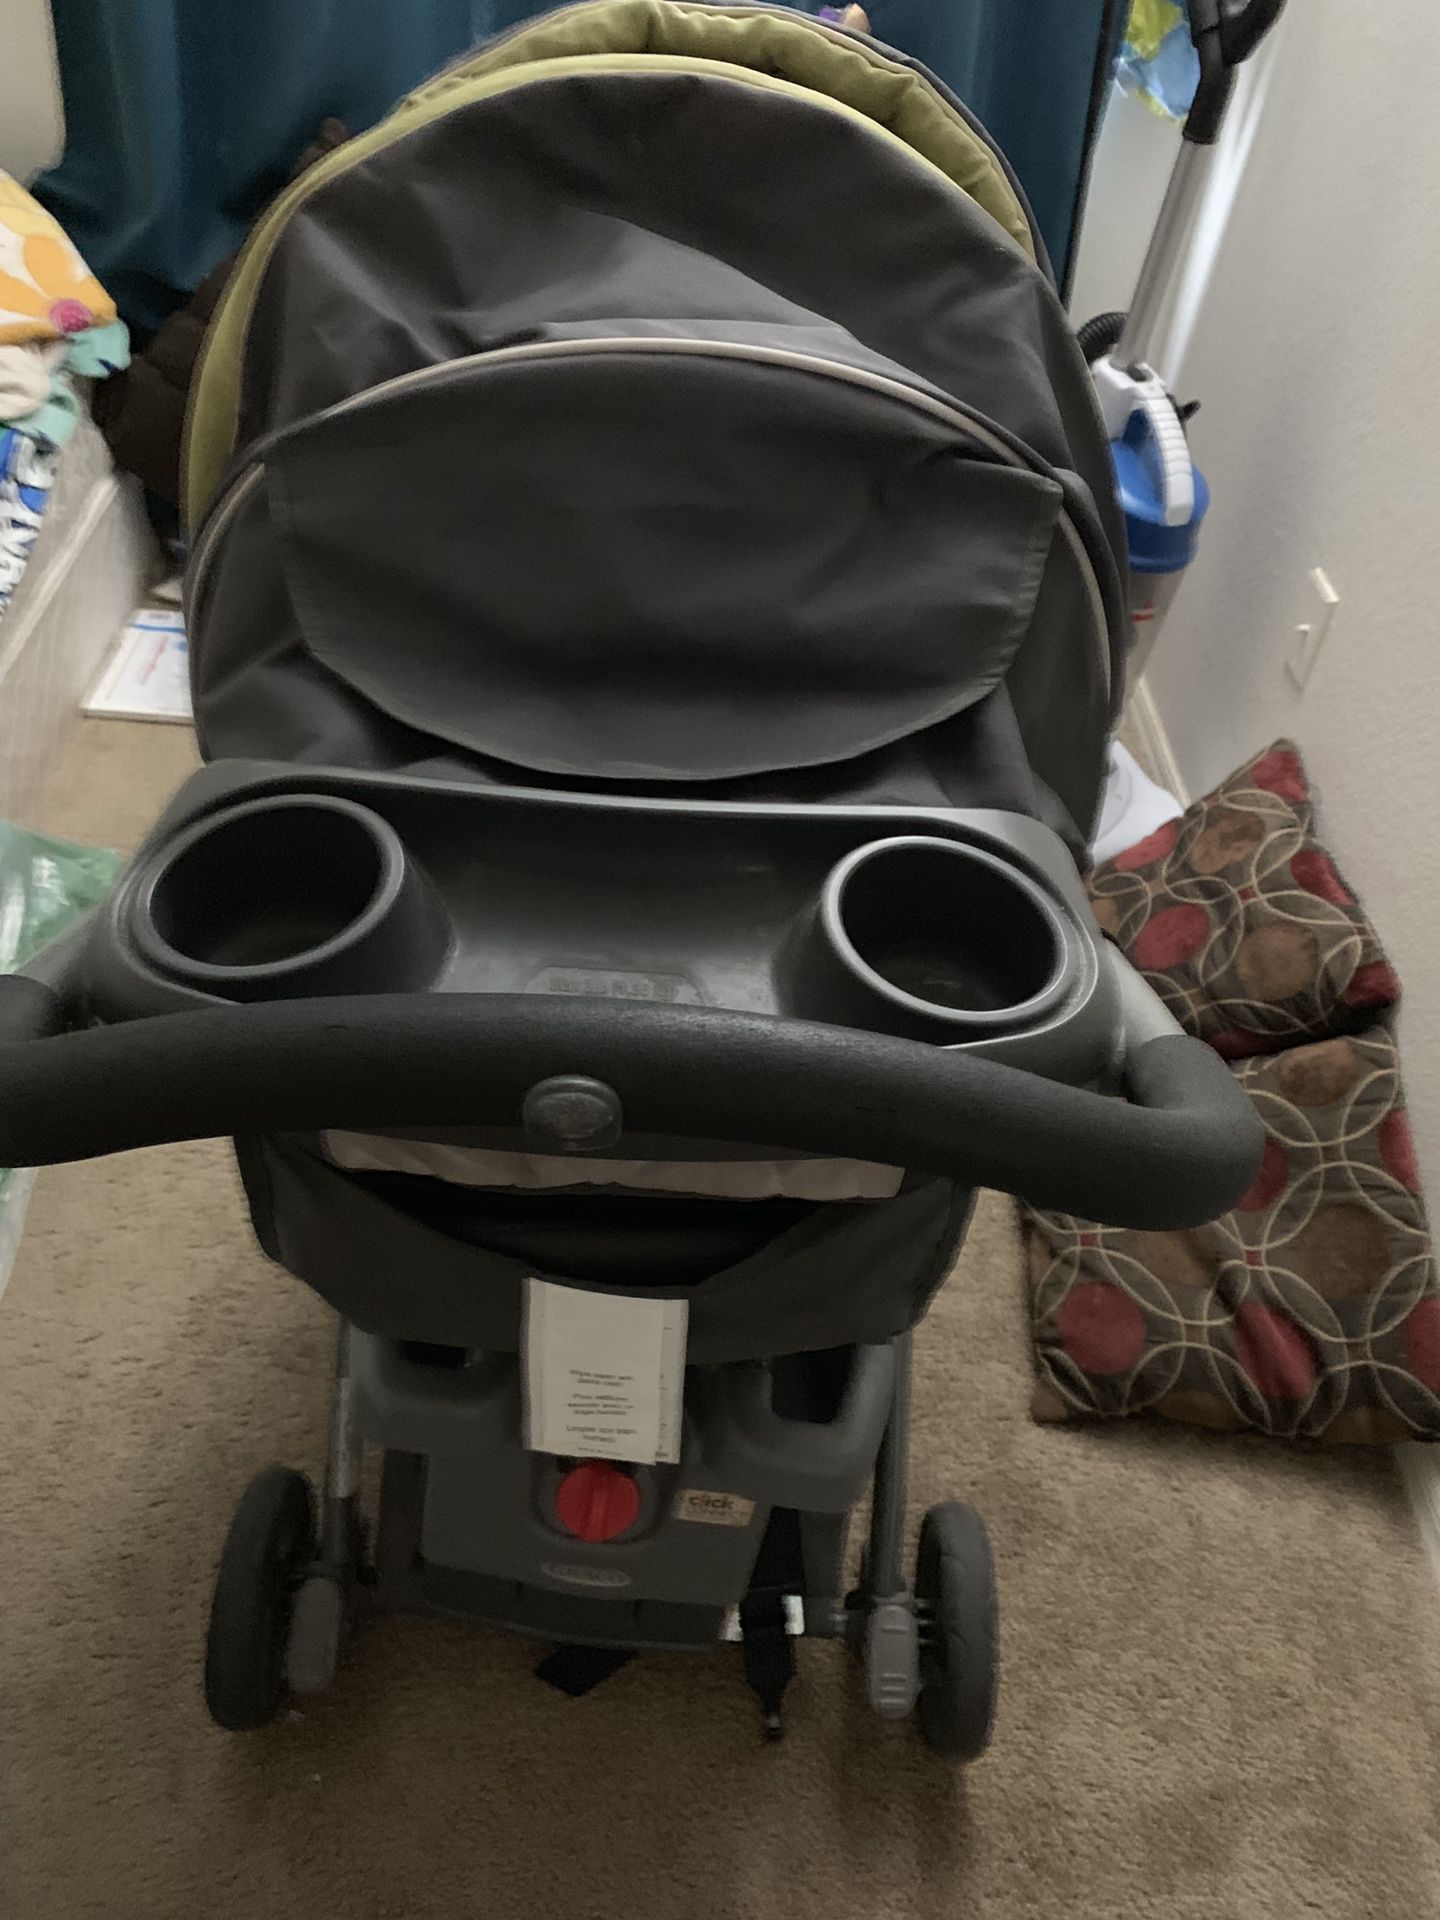 Infant travel system (car seat,base,stroller)